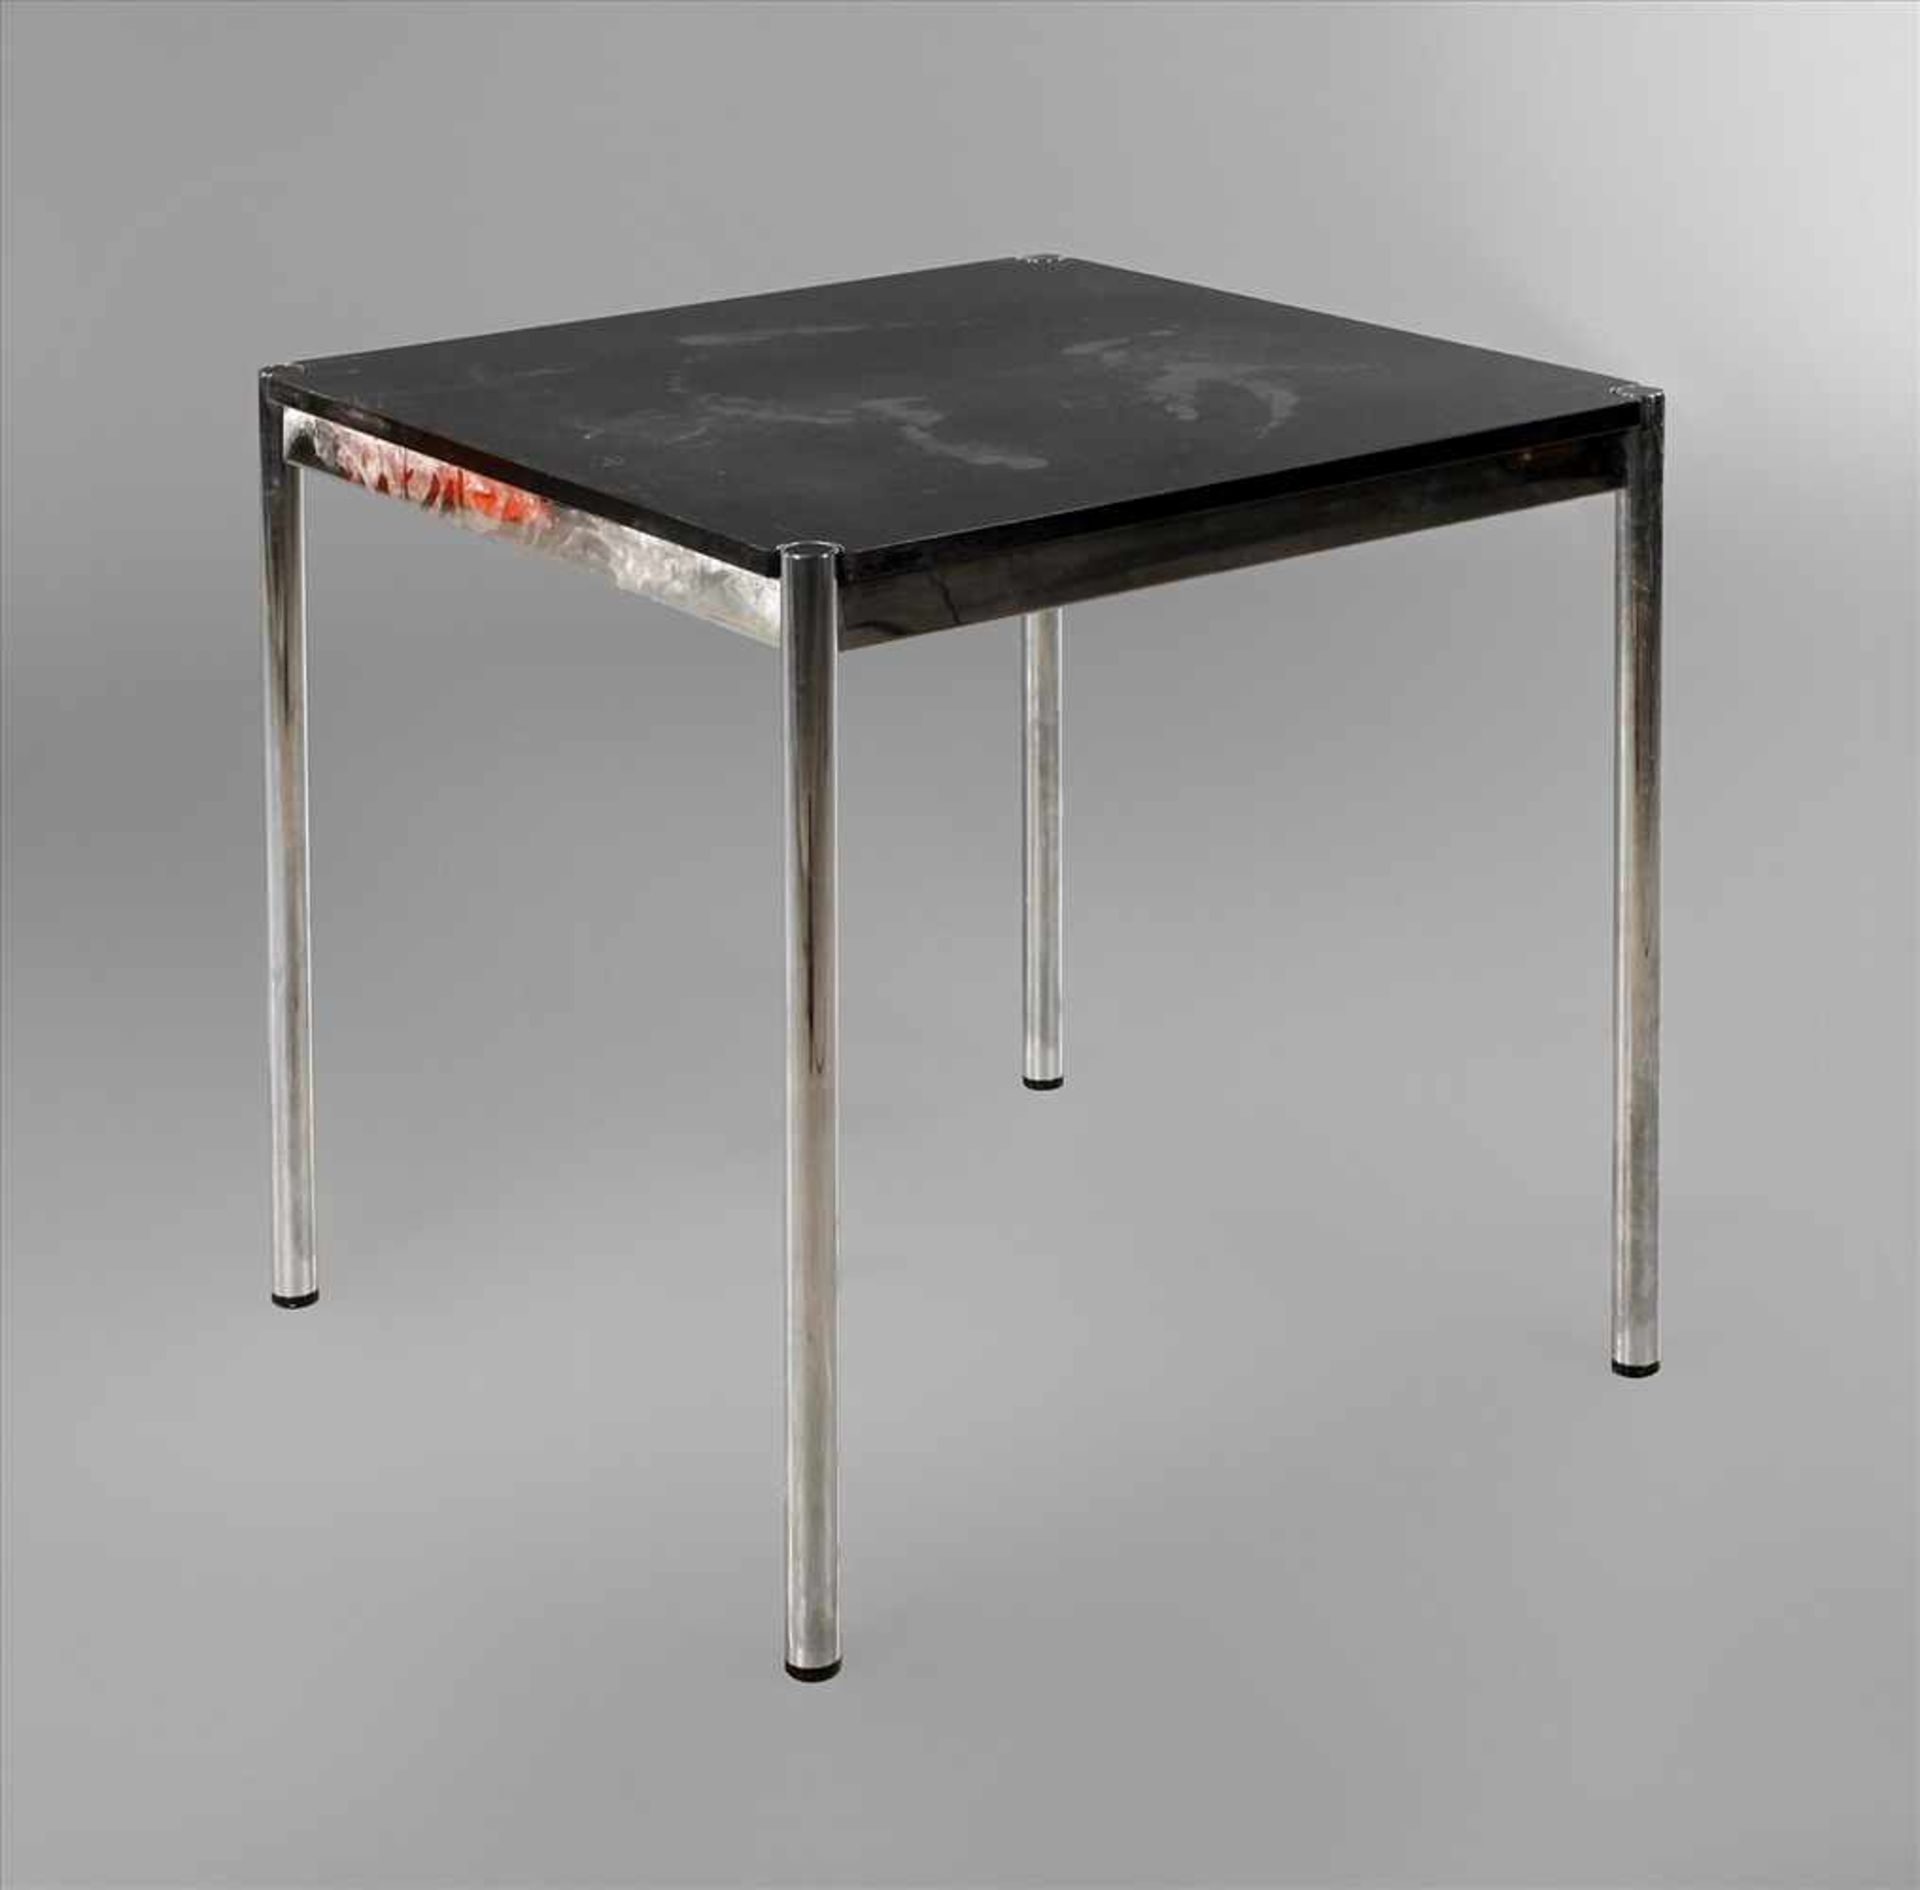 Tisch USM Hallerum 1990, quadratischer Tisch mit schwarz lackierter Platte aus Esche, verchromte